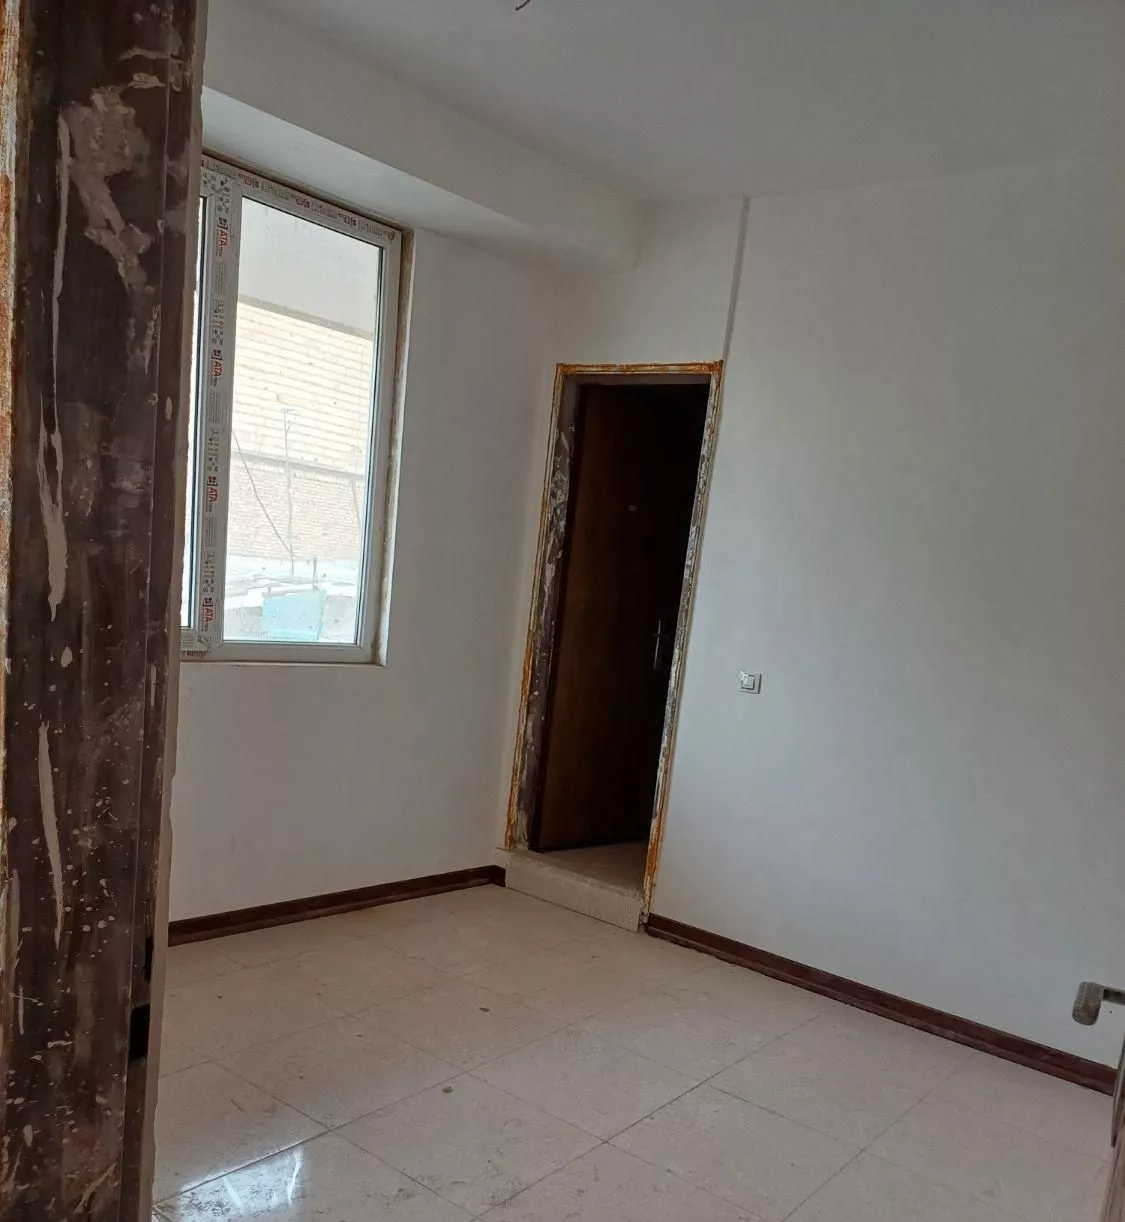 آپارتمان ۵۵ در کوچه شهید حمیدی